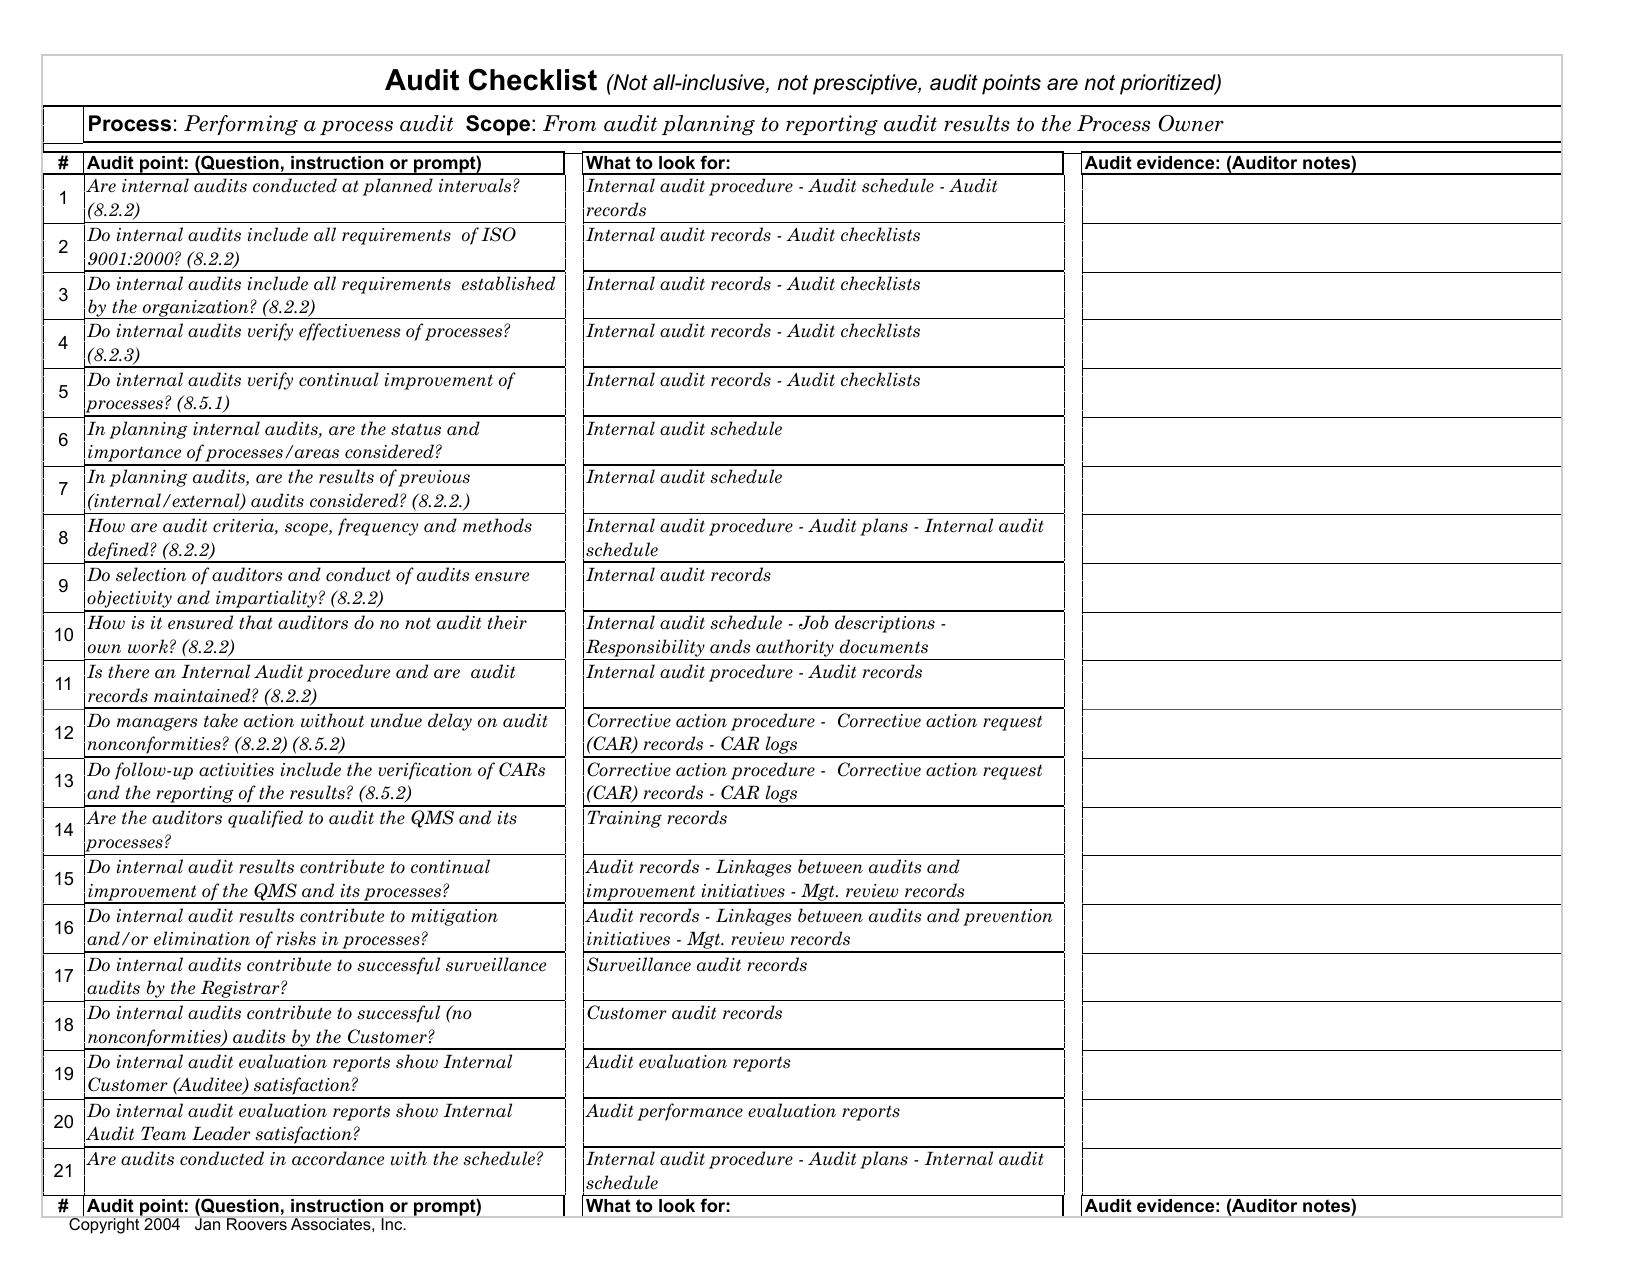 As9100 internal audit checklist template